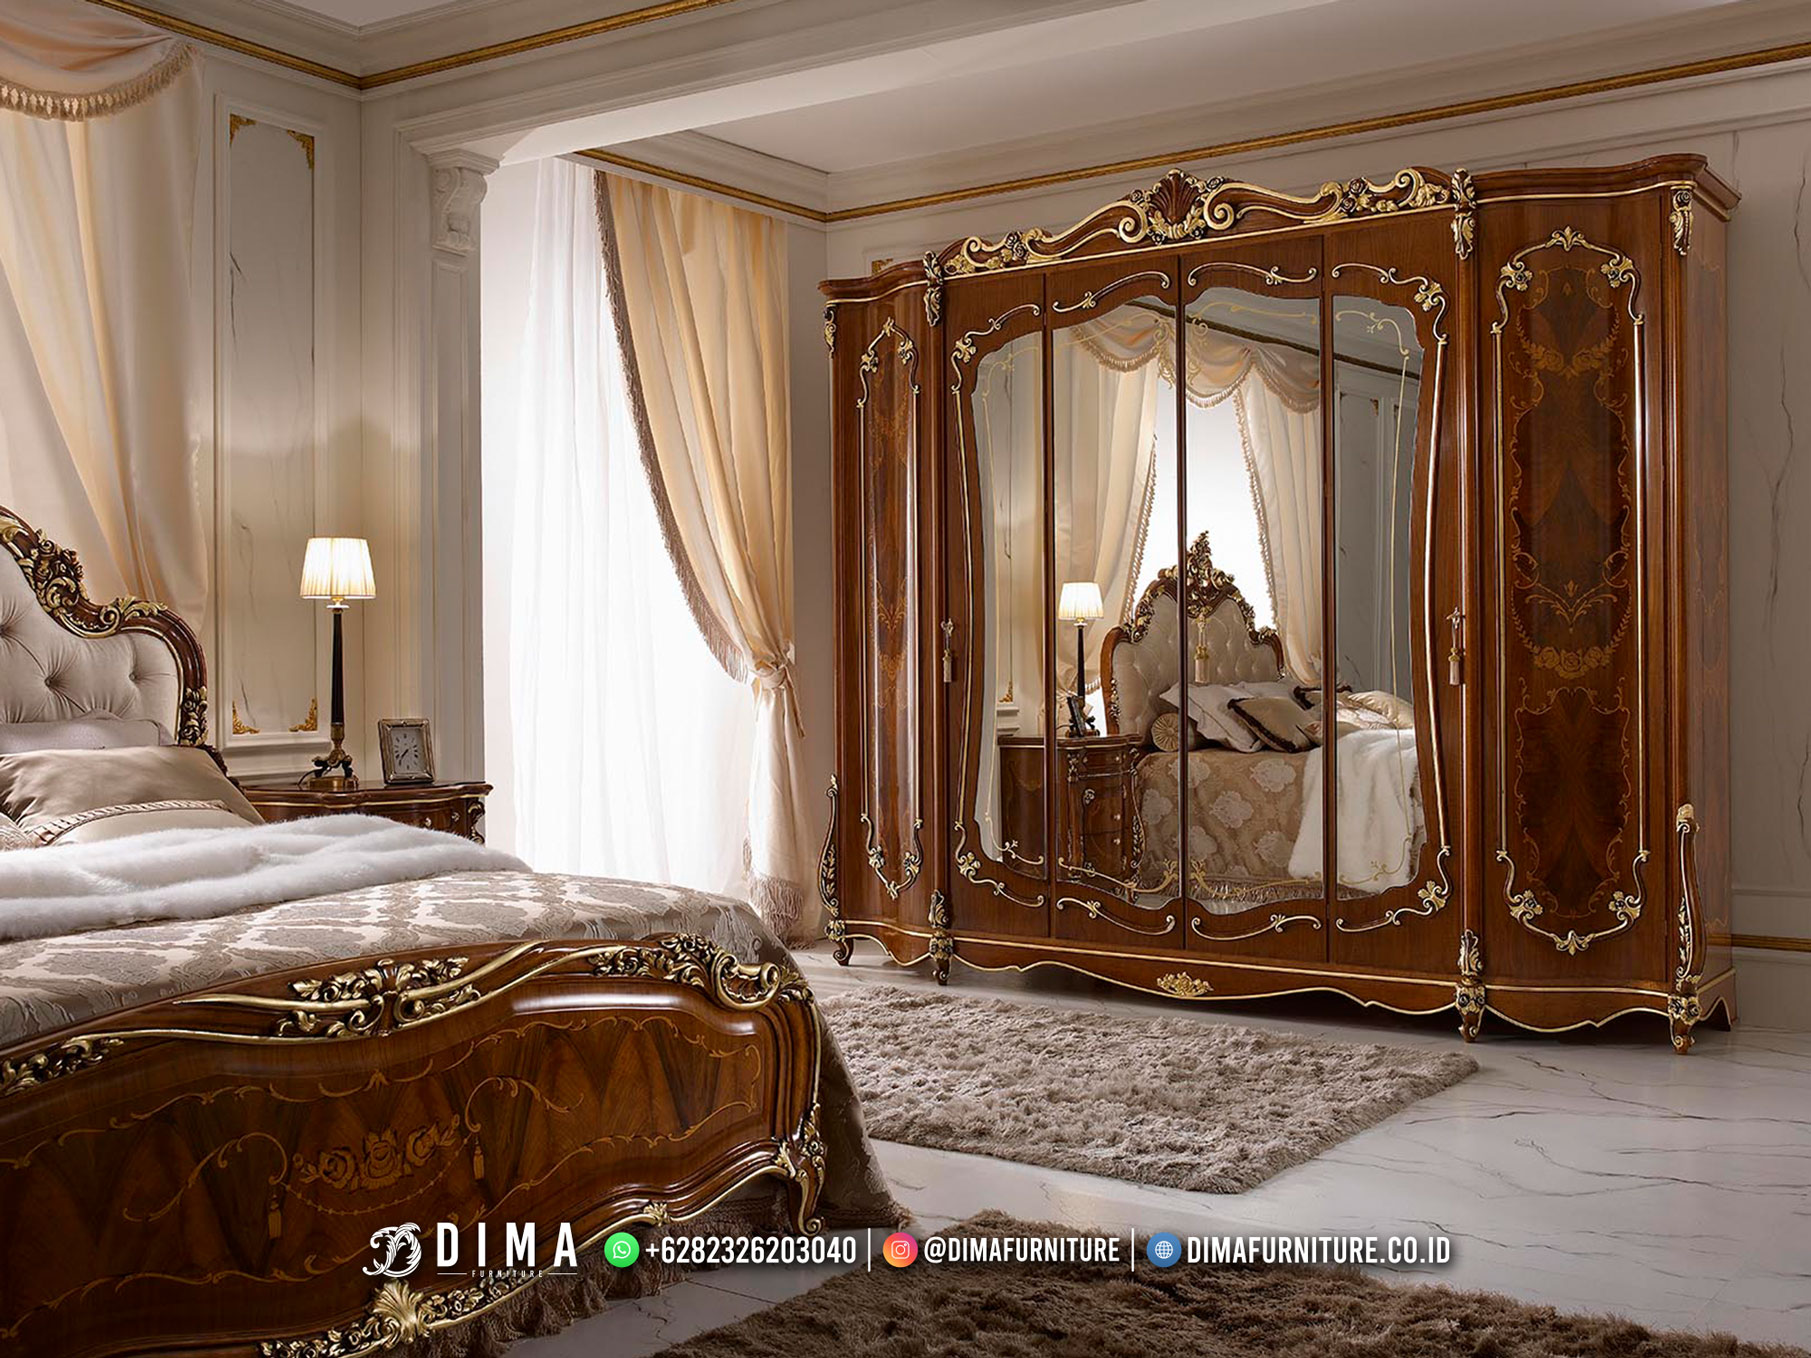 Great Quality Lemari Baju Kaca Mewah Luxury Witson Furniture Jepara TTJ-2627